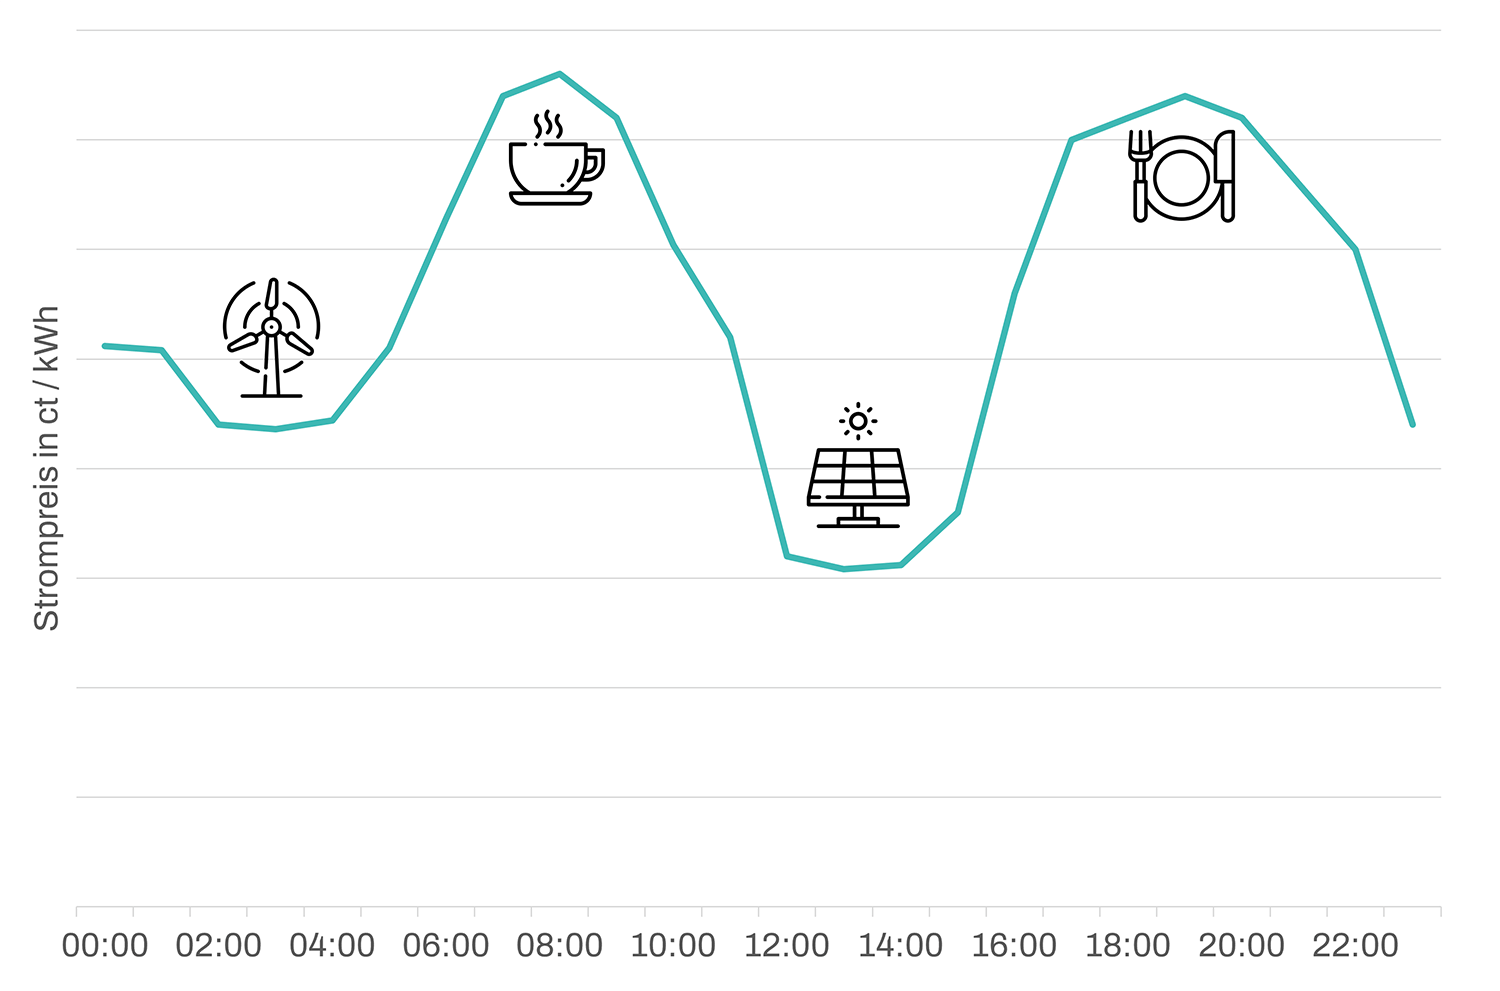 Strompreis im Tagesverlauf